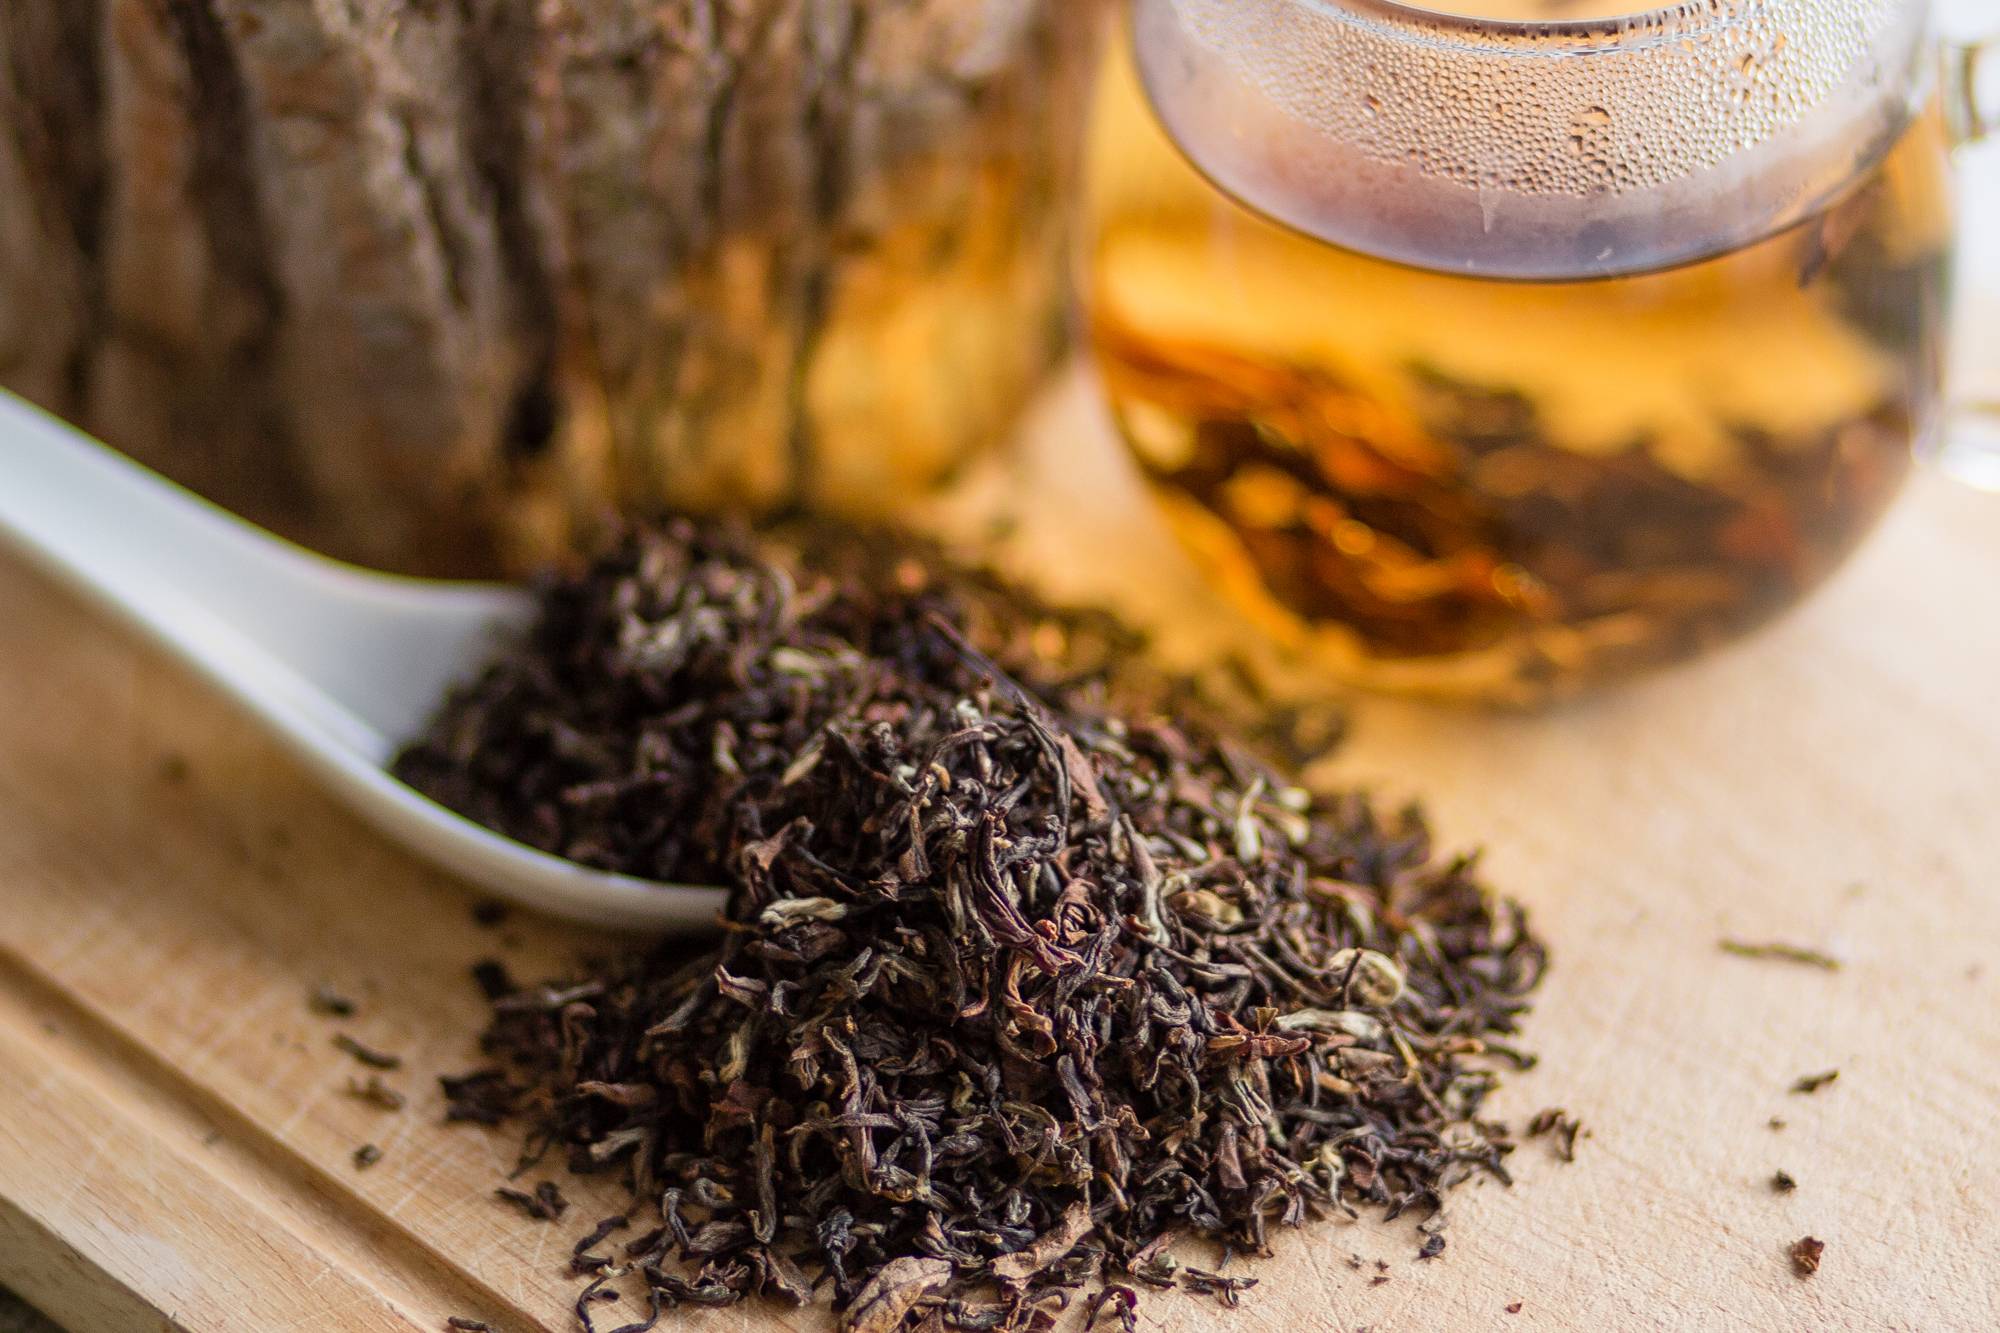 Какой чай пьют в индии, и есть ли у них чайная традиция?